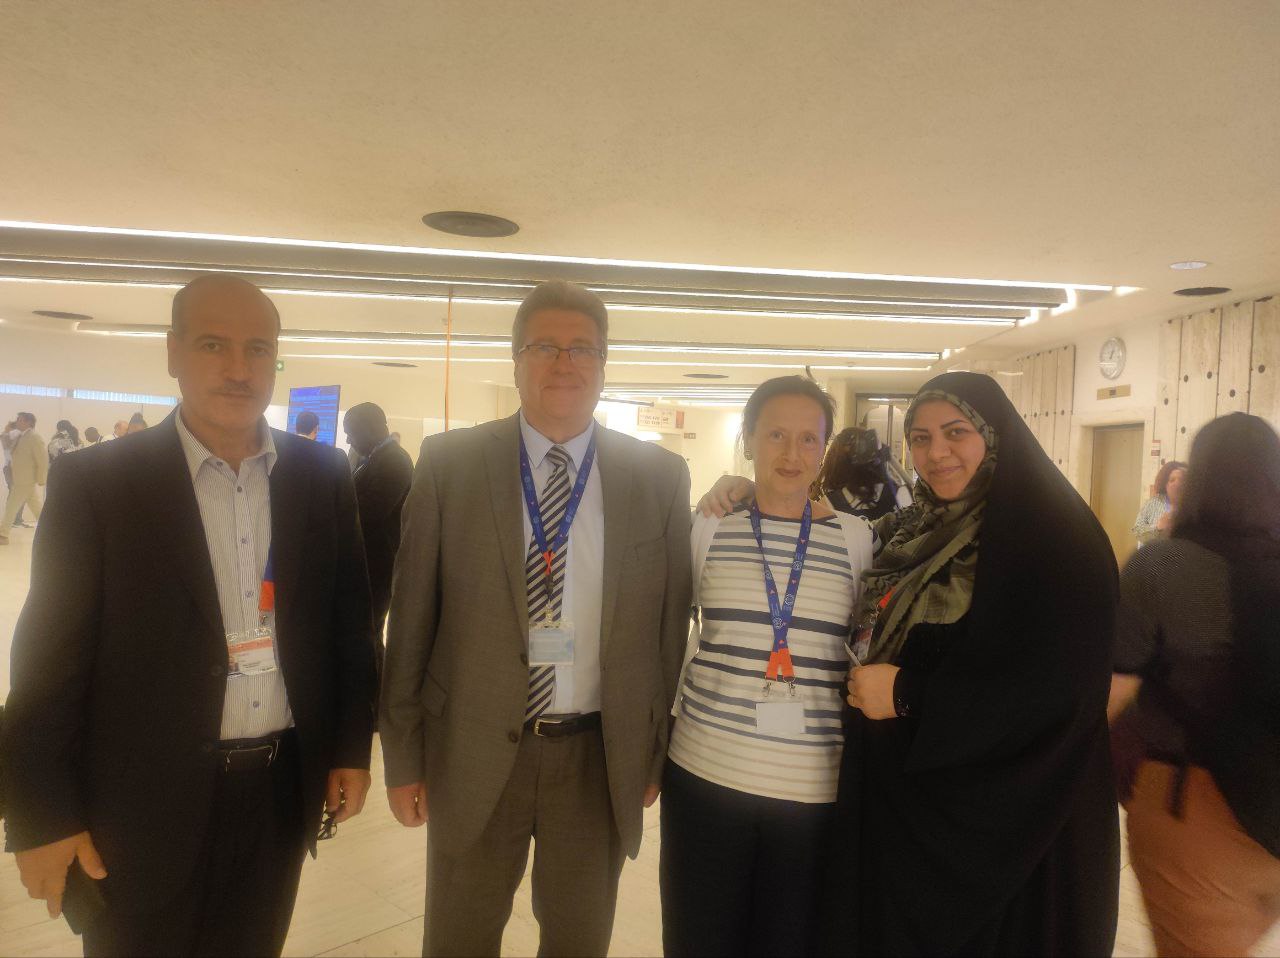 دیدار اعضای هیات کارگری ایران در سازمان جهانی کار با هیات روسی